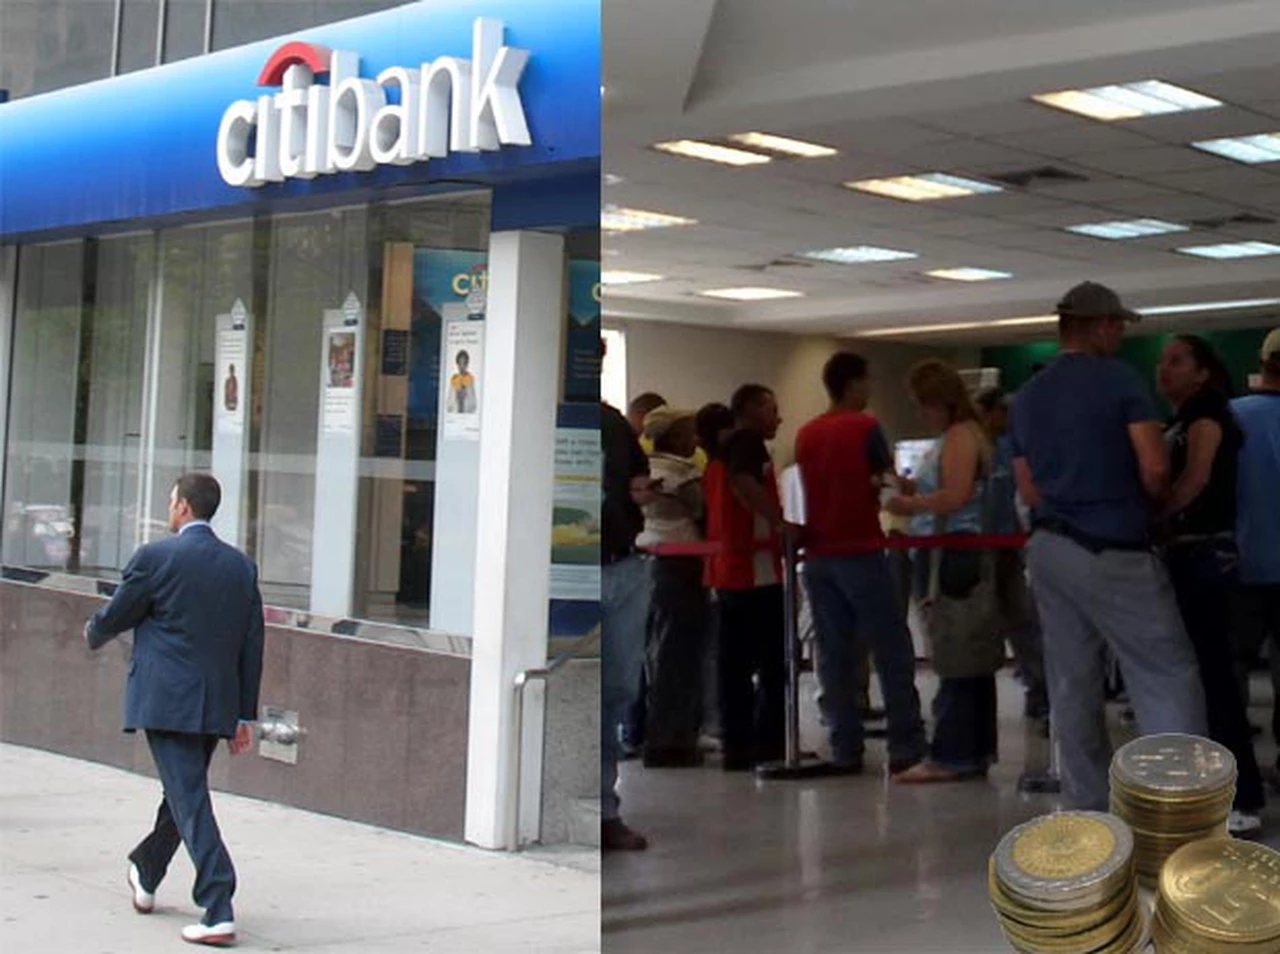 Confirman multa contra Citibank por entregar pocas monedas al público